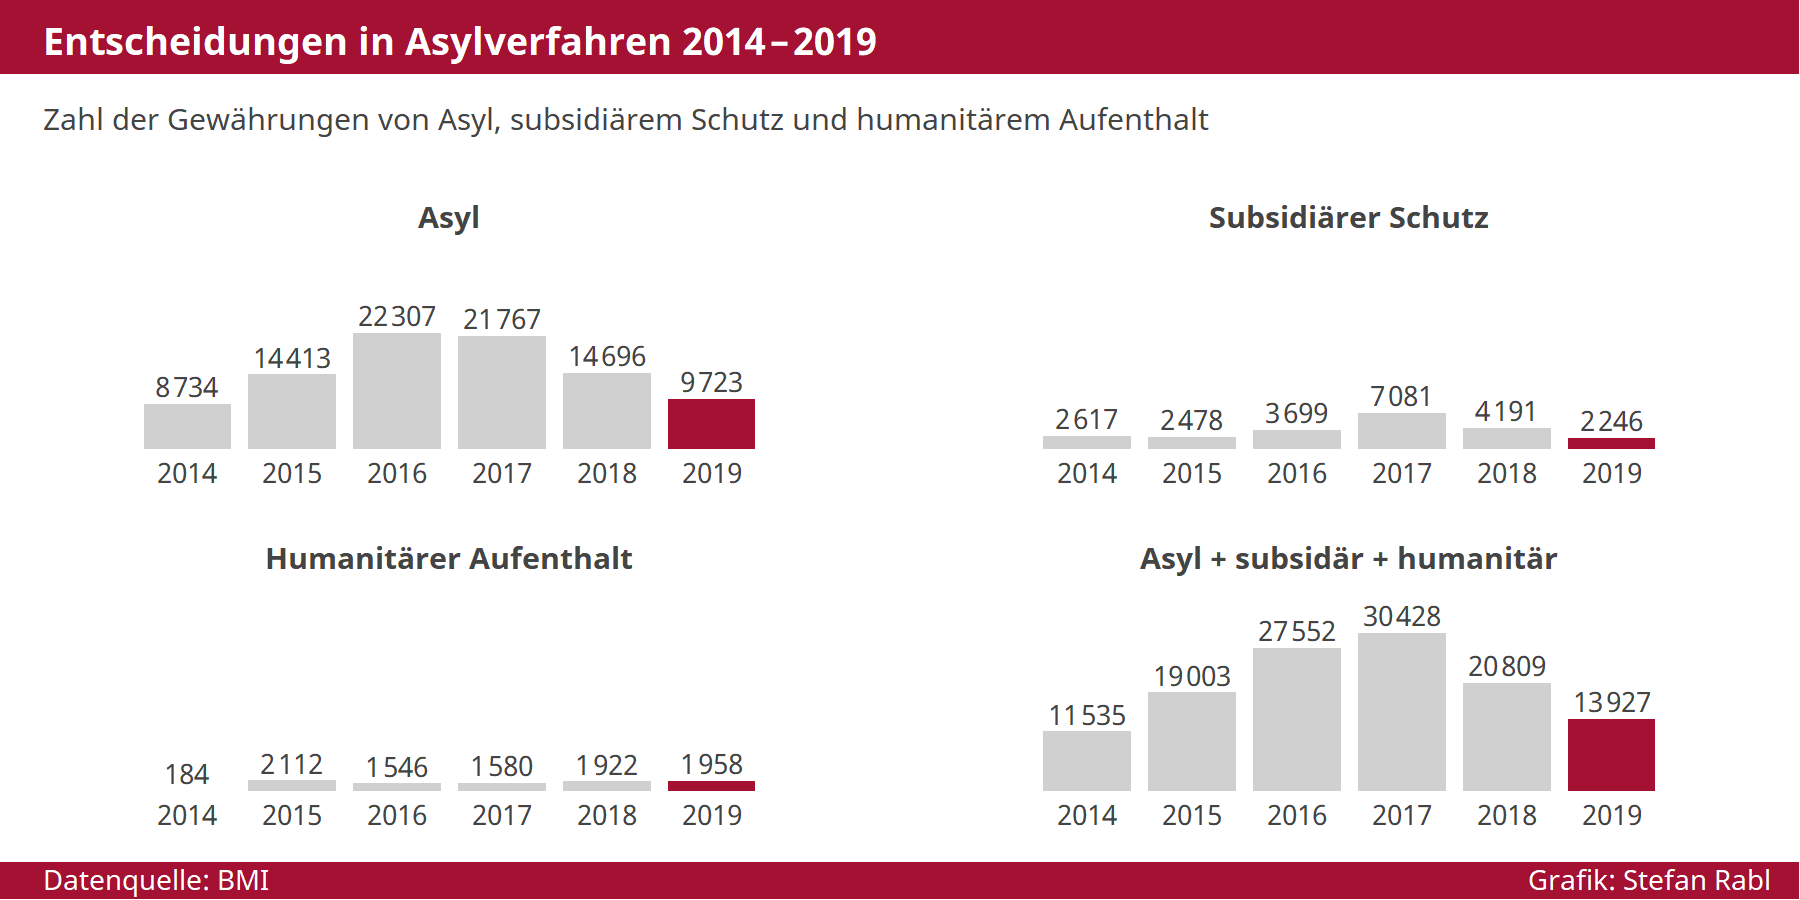 Grafik: Asylentscheidungen 2014-2018